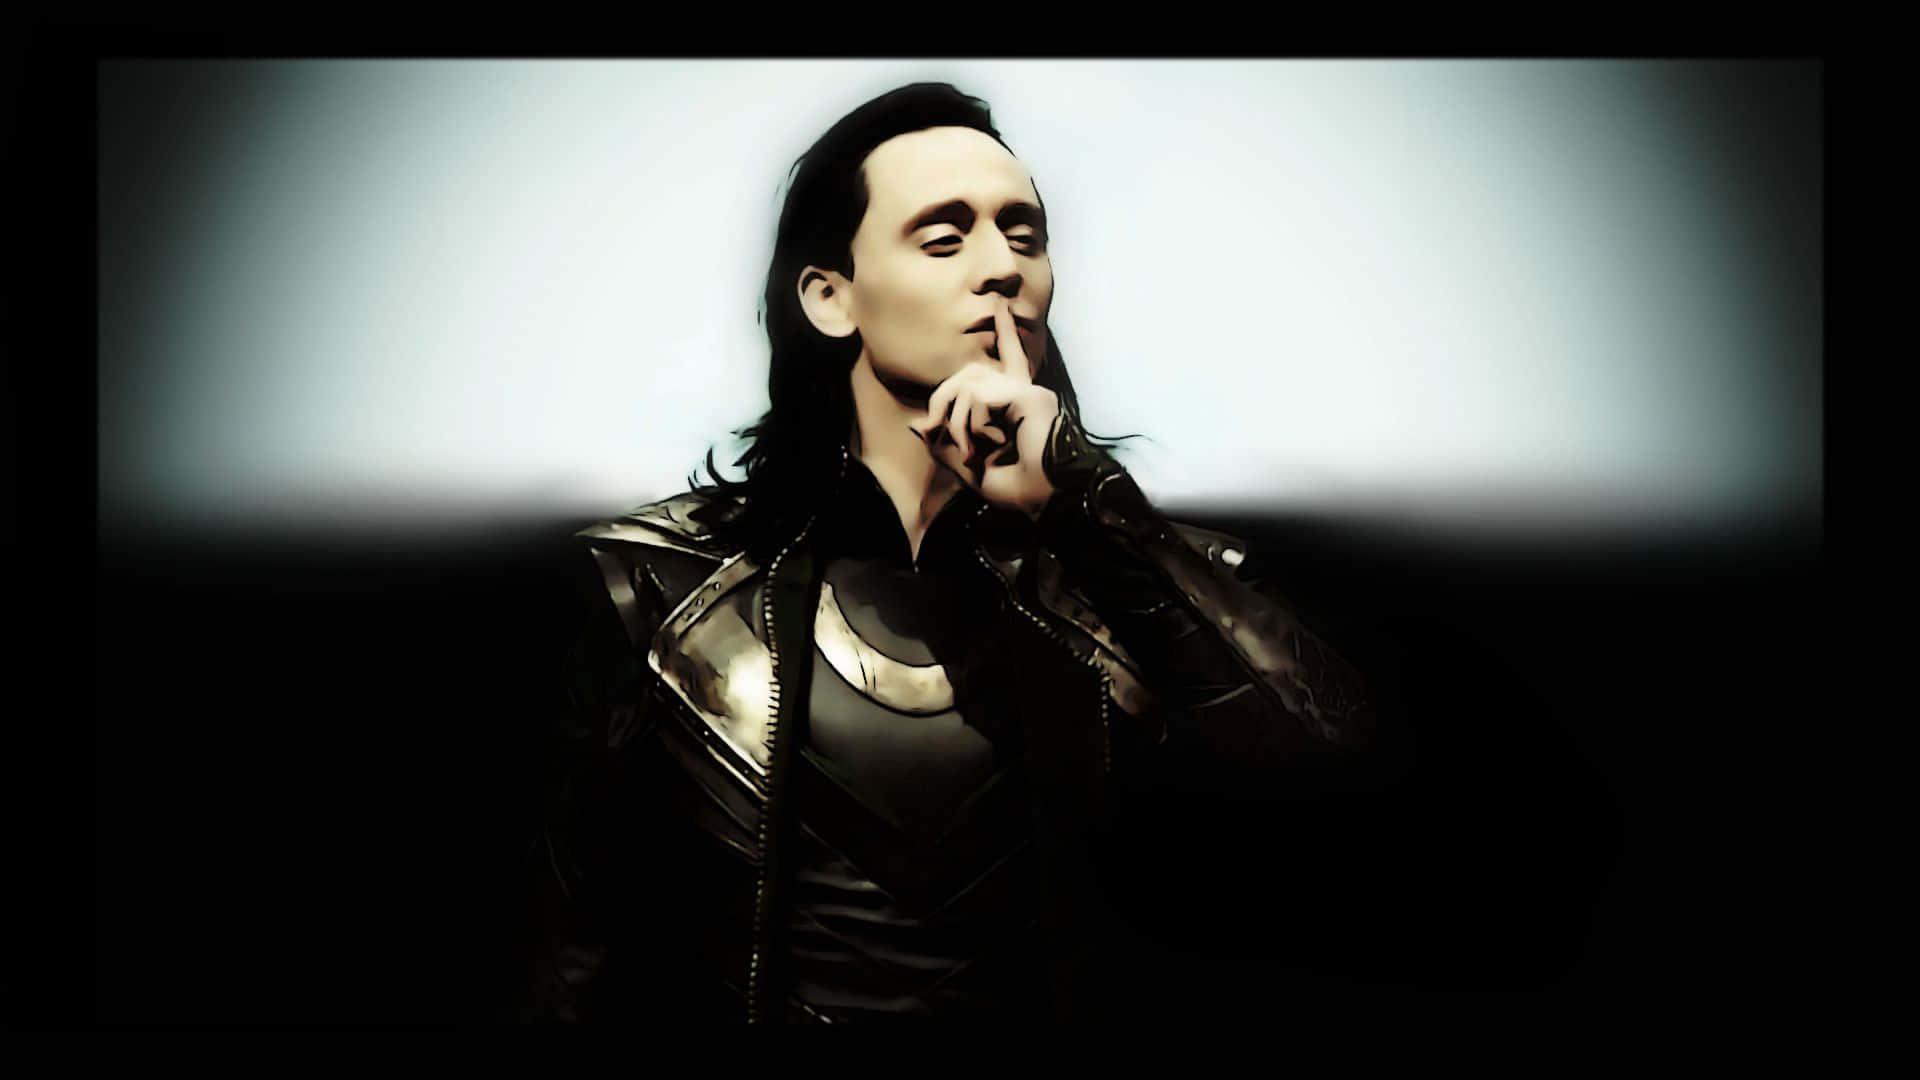 Loki,die Schelmische Marvel-figur